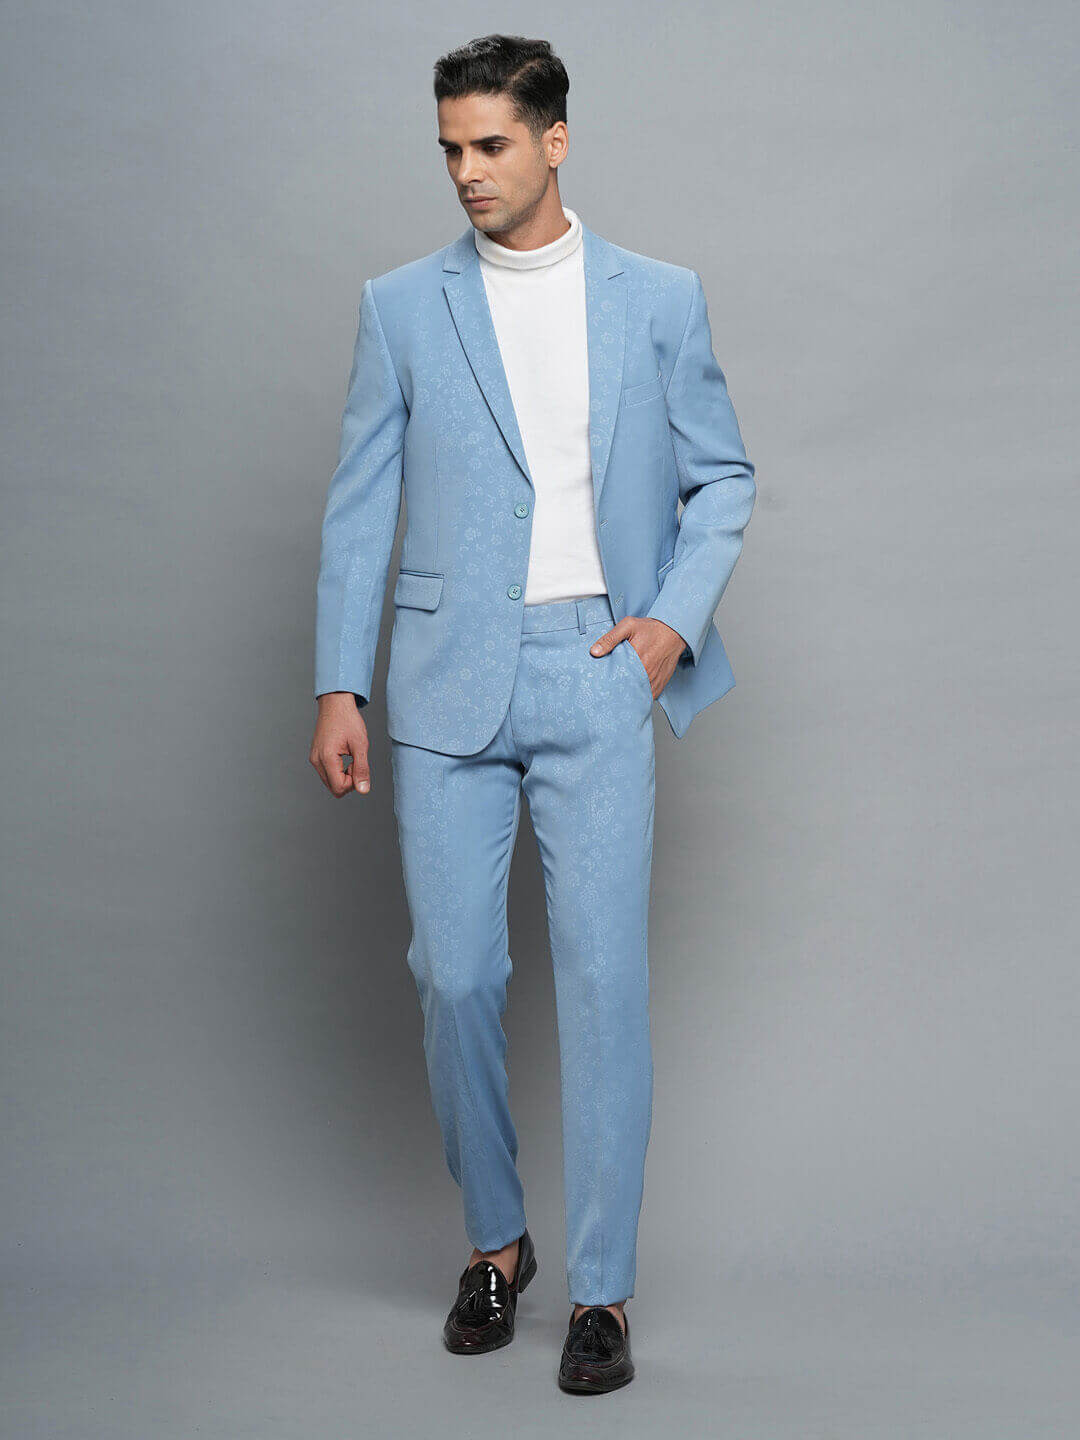 Candidmen: Pastel Blue Floral Print Full Suit